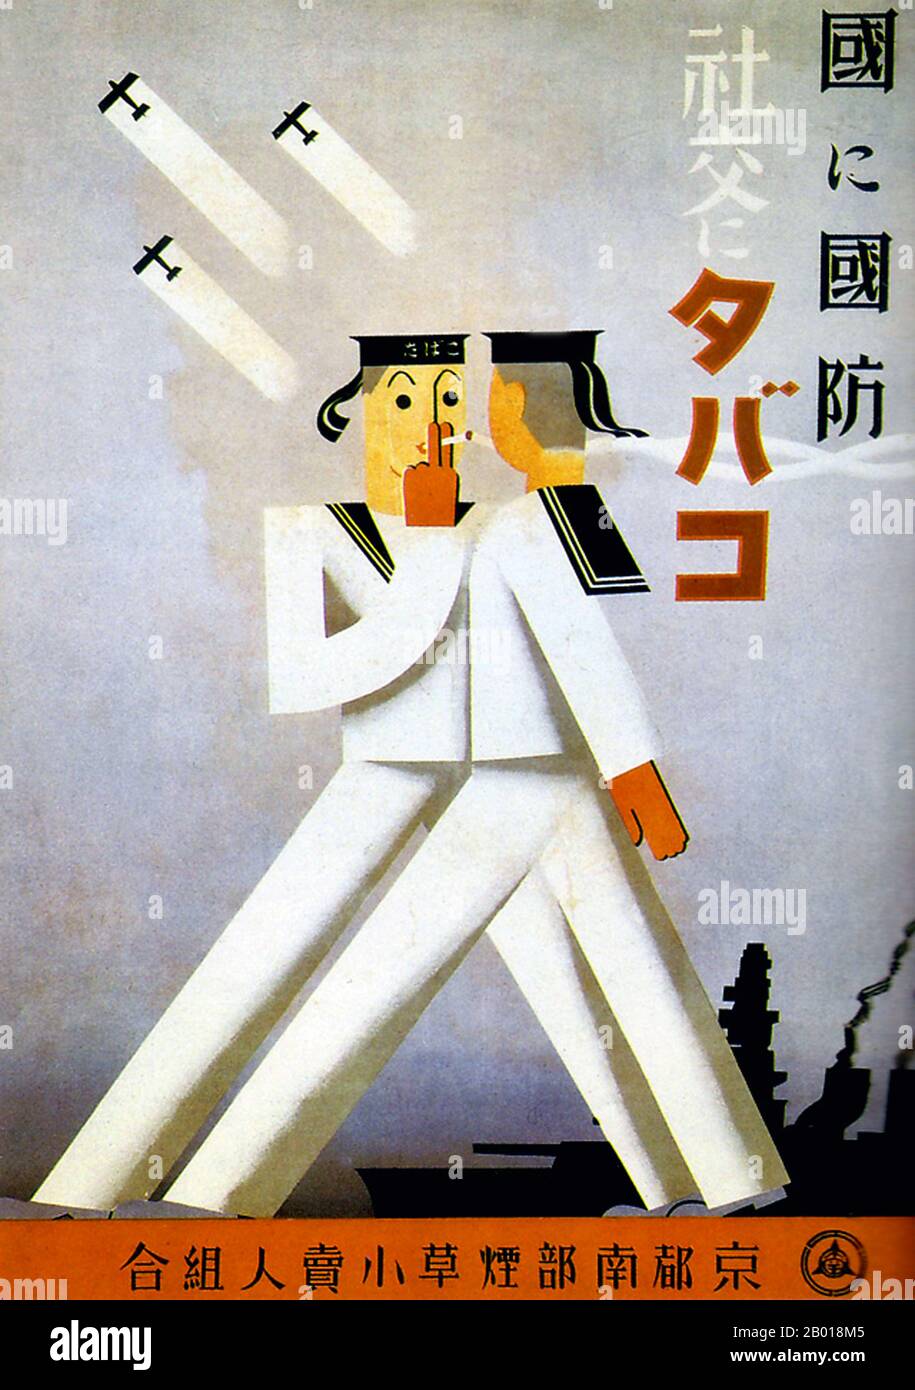 Japon: 'La campagne, le tabac pour la société'. Affiche publicitaire pour le South Kyoto Tobacco Sellers Union, 1937. Le militarisme, bien que sous une forme stylisée, lorsque deux automates navals exhantent une lumière sous trois avions de guerre. La silhouette d'un navire de guerre est en arrière-plan. Banque D'Images